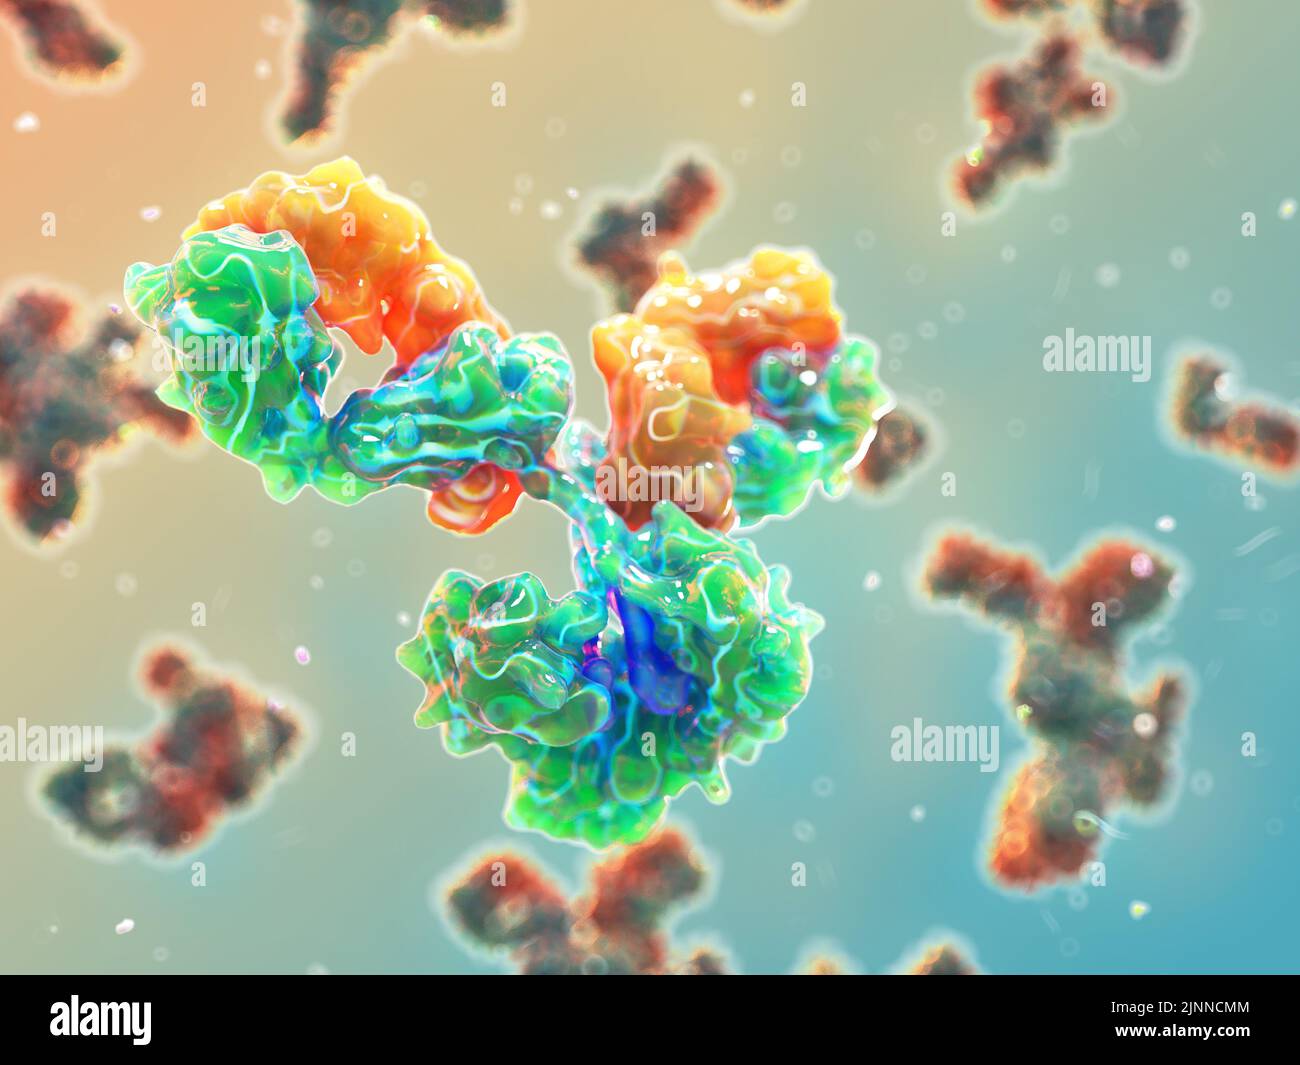 Ilustración de un anticuerpo IgG, conocido como inmunoglobulina. Tienen una estructura en forma de Y y permite la unión de antígenos. Foto de stock